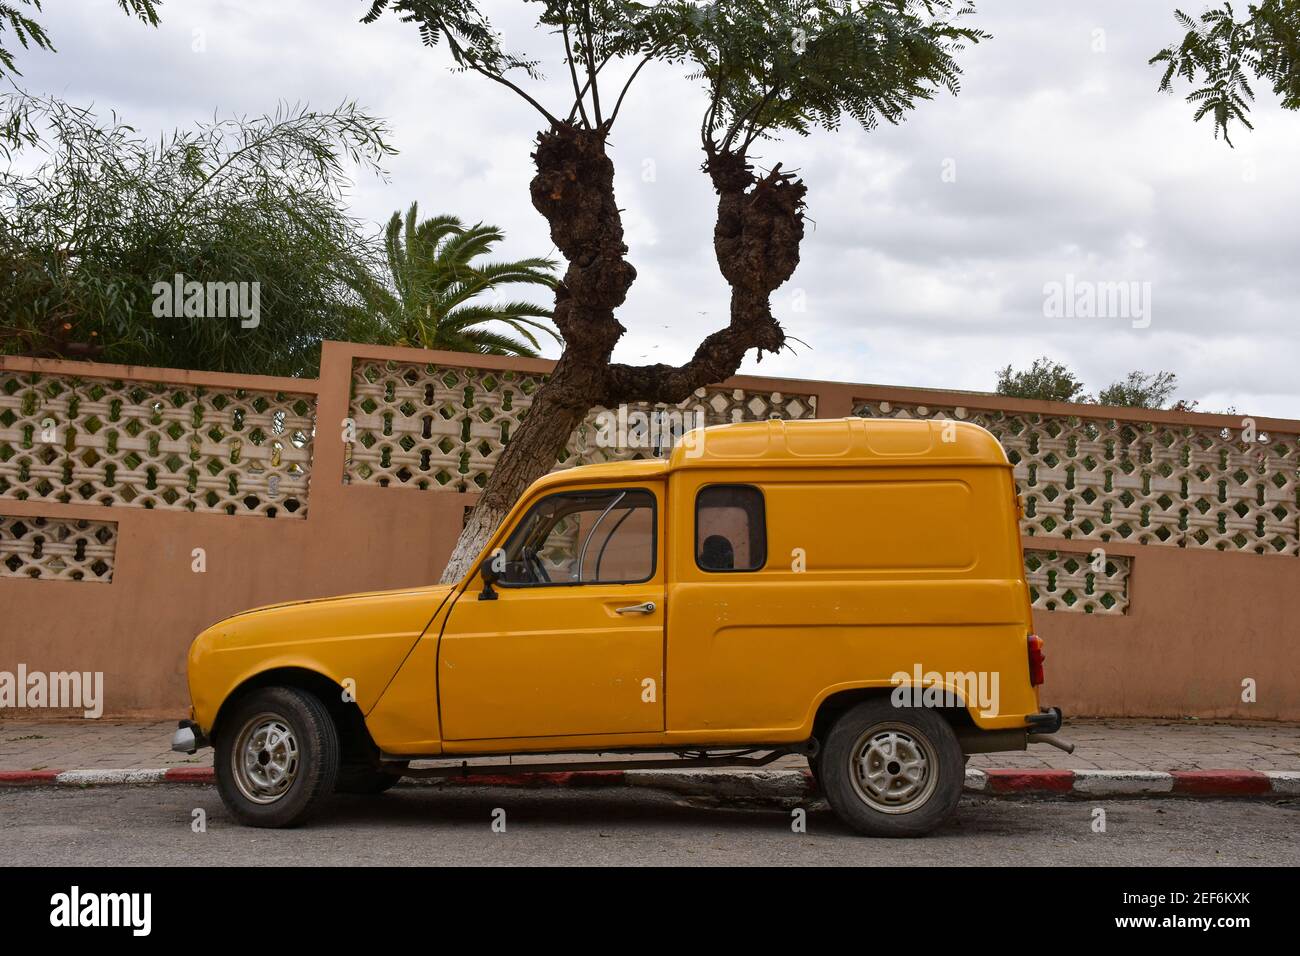 Renault 4 furgone immagini e fotografie stock ad alta risoluzione - Alamy